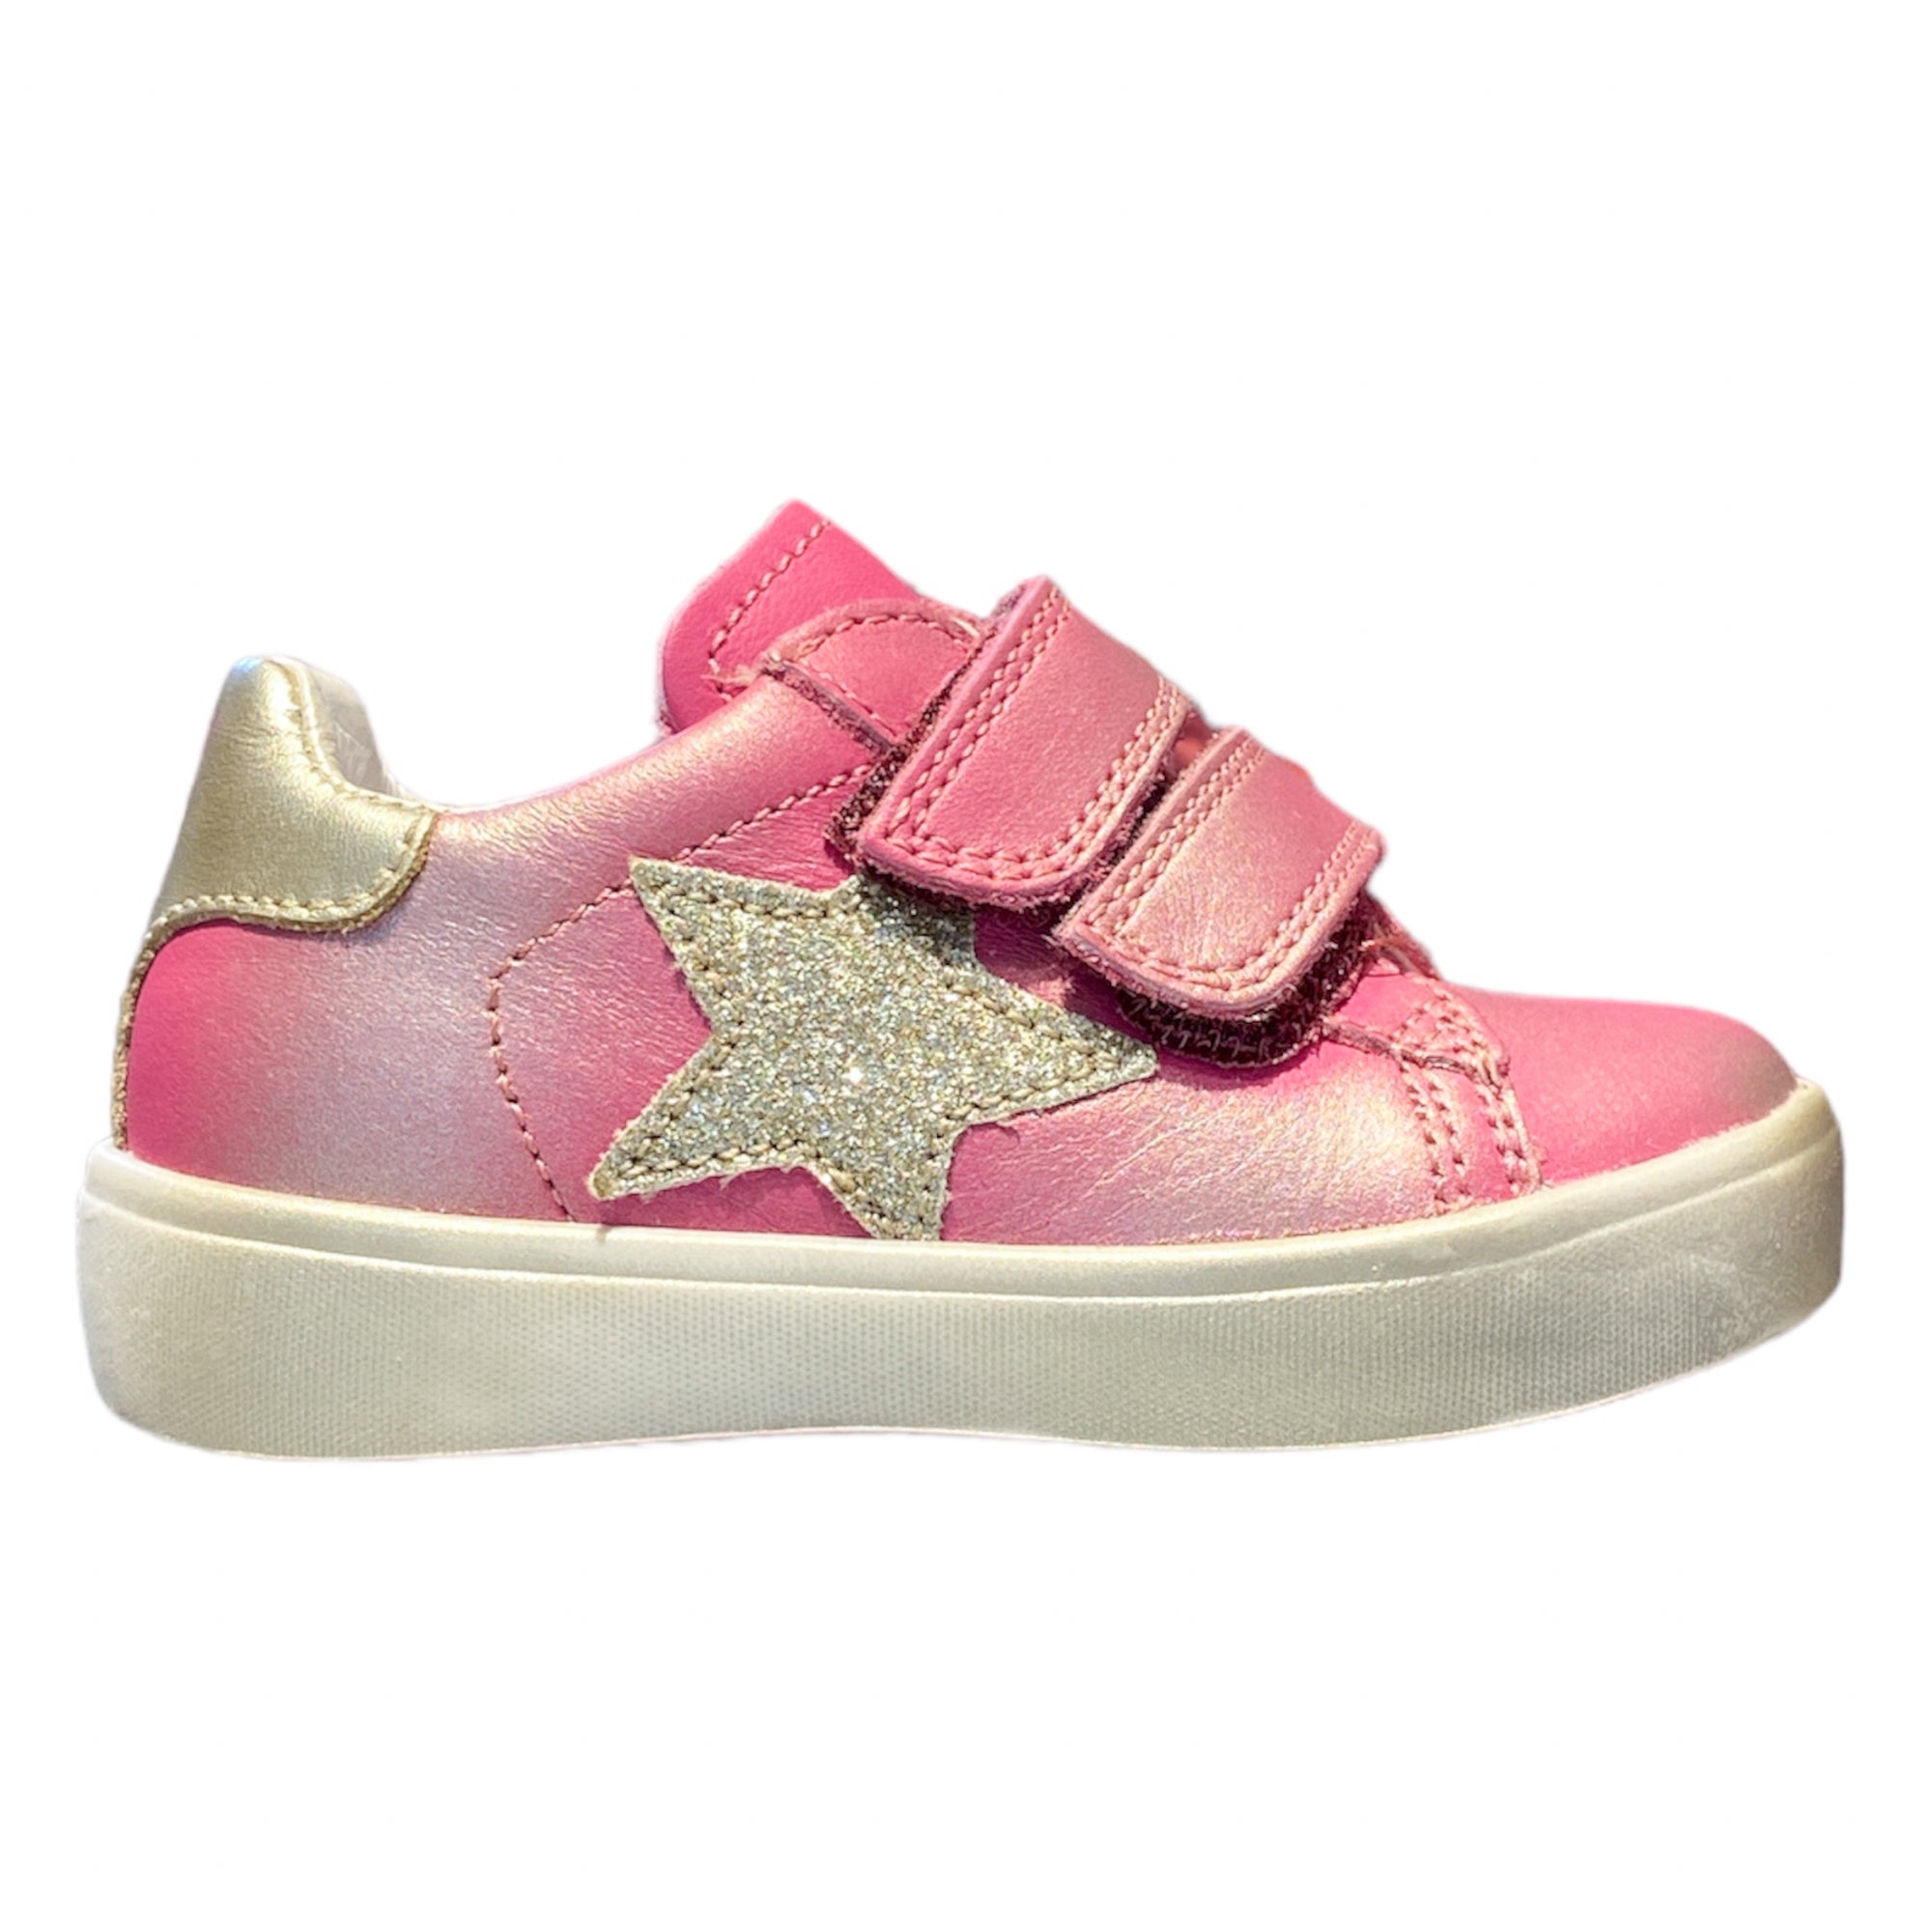 Naturino Baby Girls Annie Sneakers